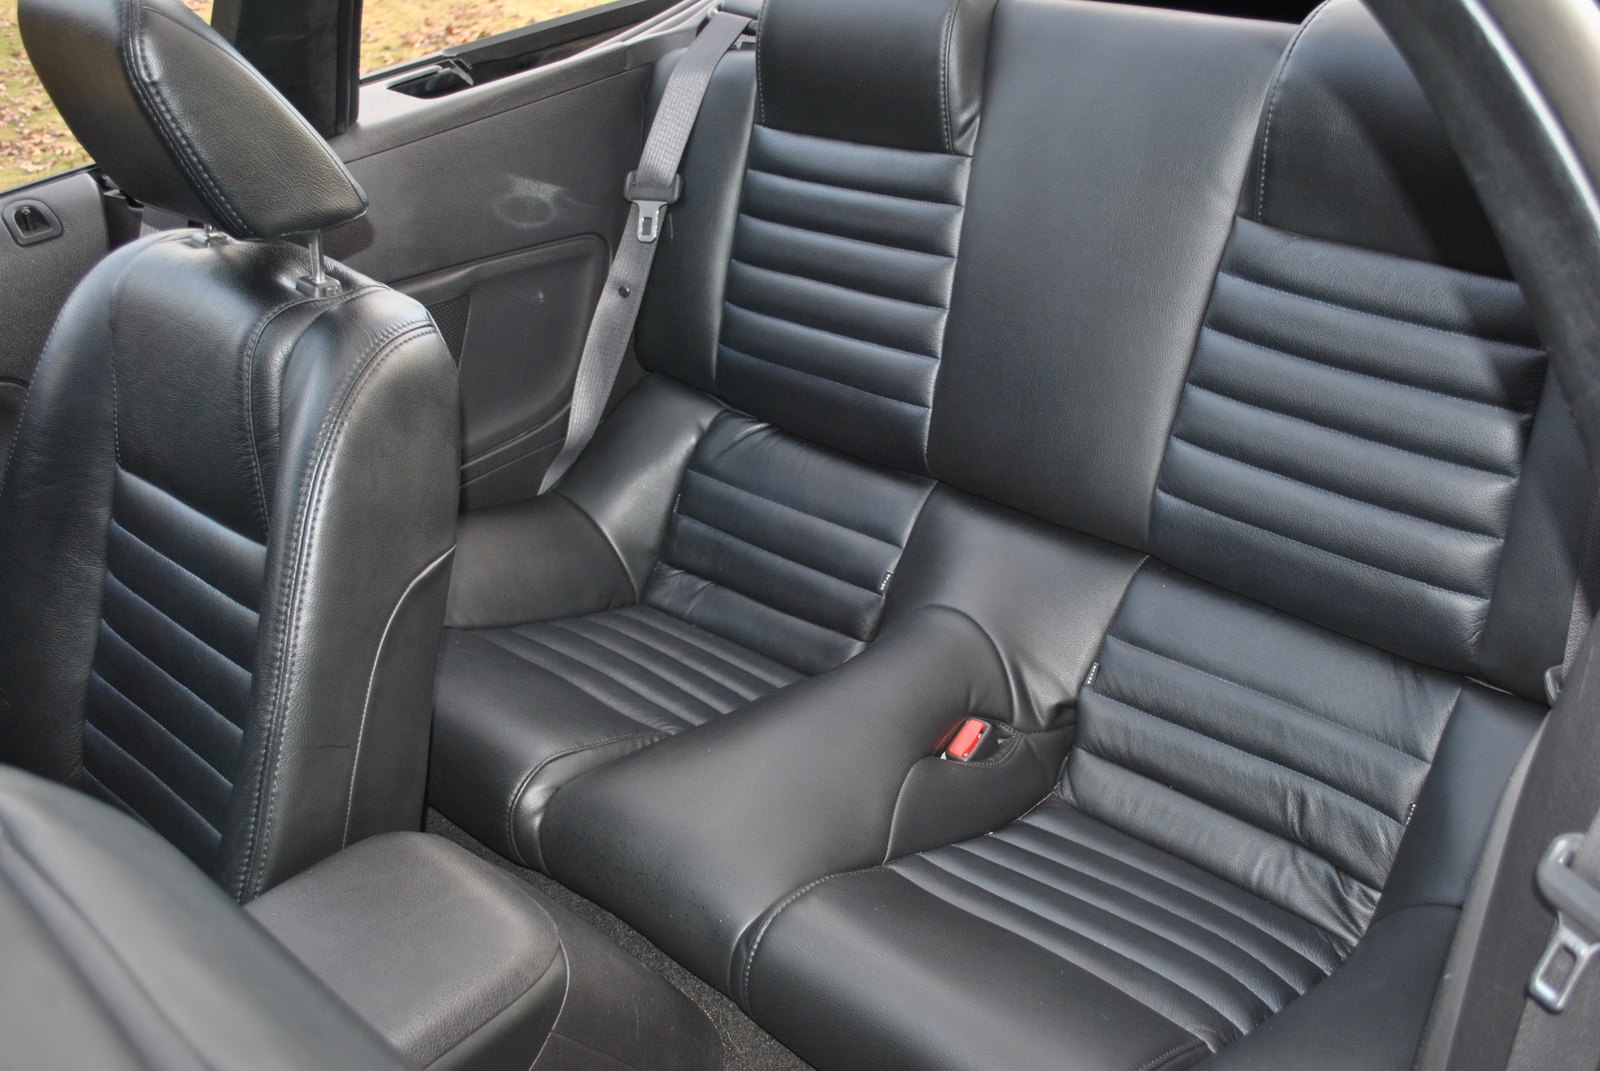 2007 Ford mustang v6 interior #4